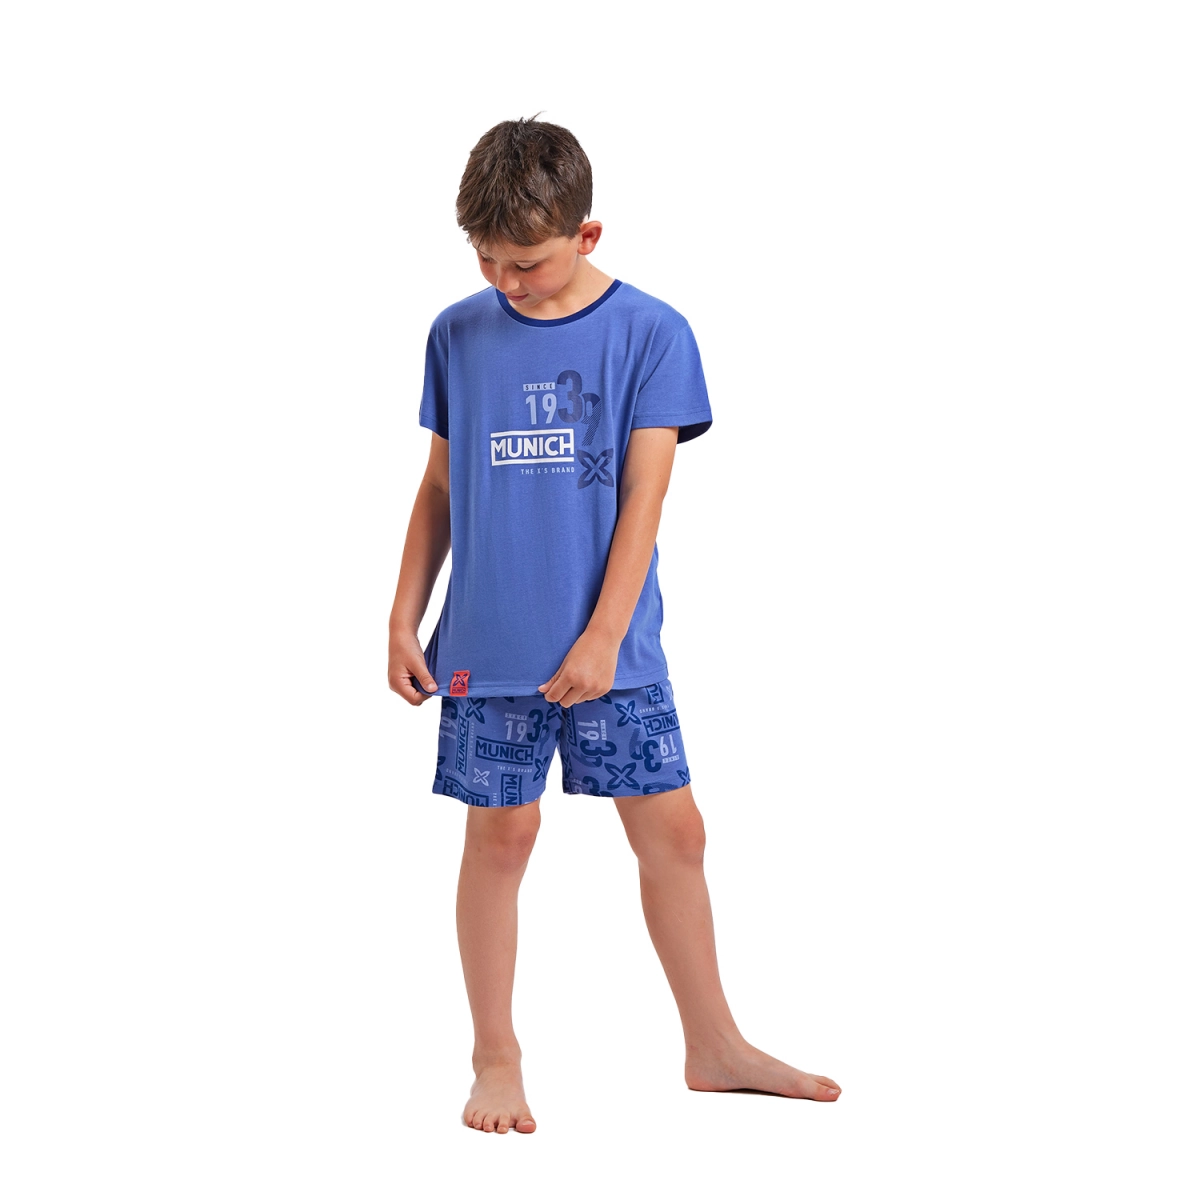 Pijama de manga corta y cuello redondo Munich DH1351 niño Talla: 4 AÑOS Color: Azul DH1351.4 AÑOS